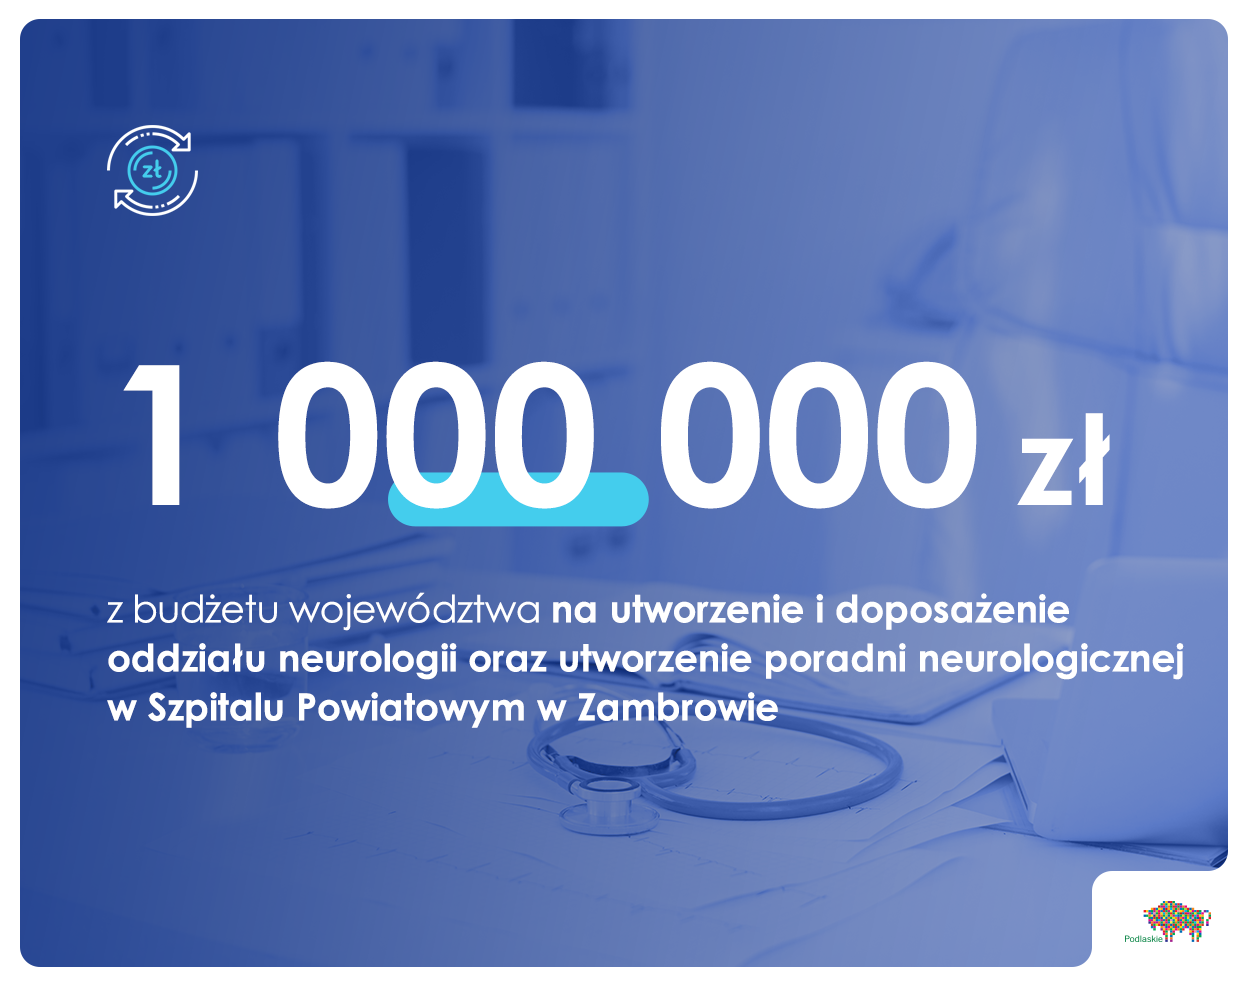 Informacje o dotacji udzielonej na utworzenie oddziału neurologii w Szpitalu Powiatowym w Zambrowie, takie same zawiera tekst